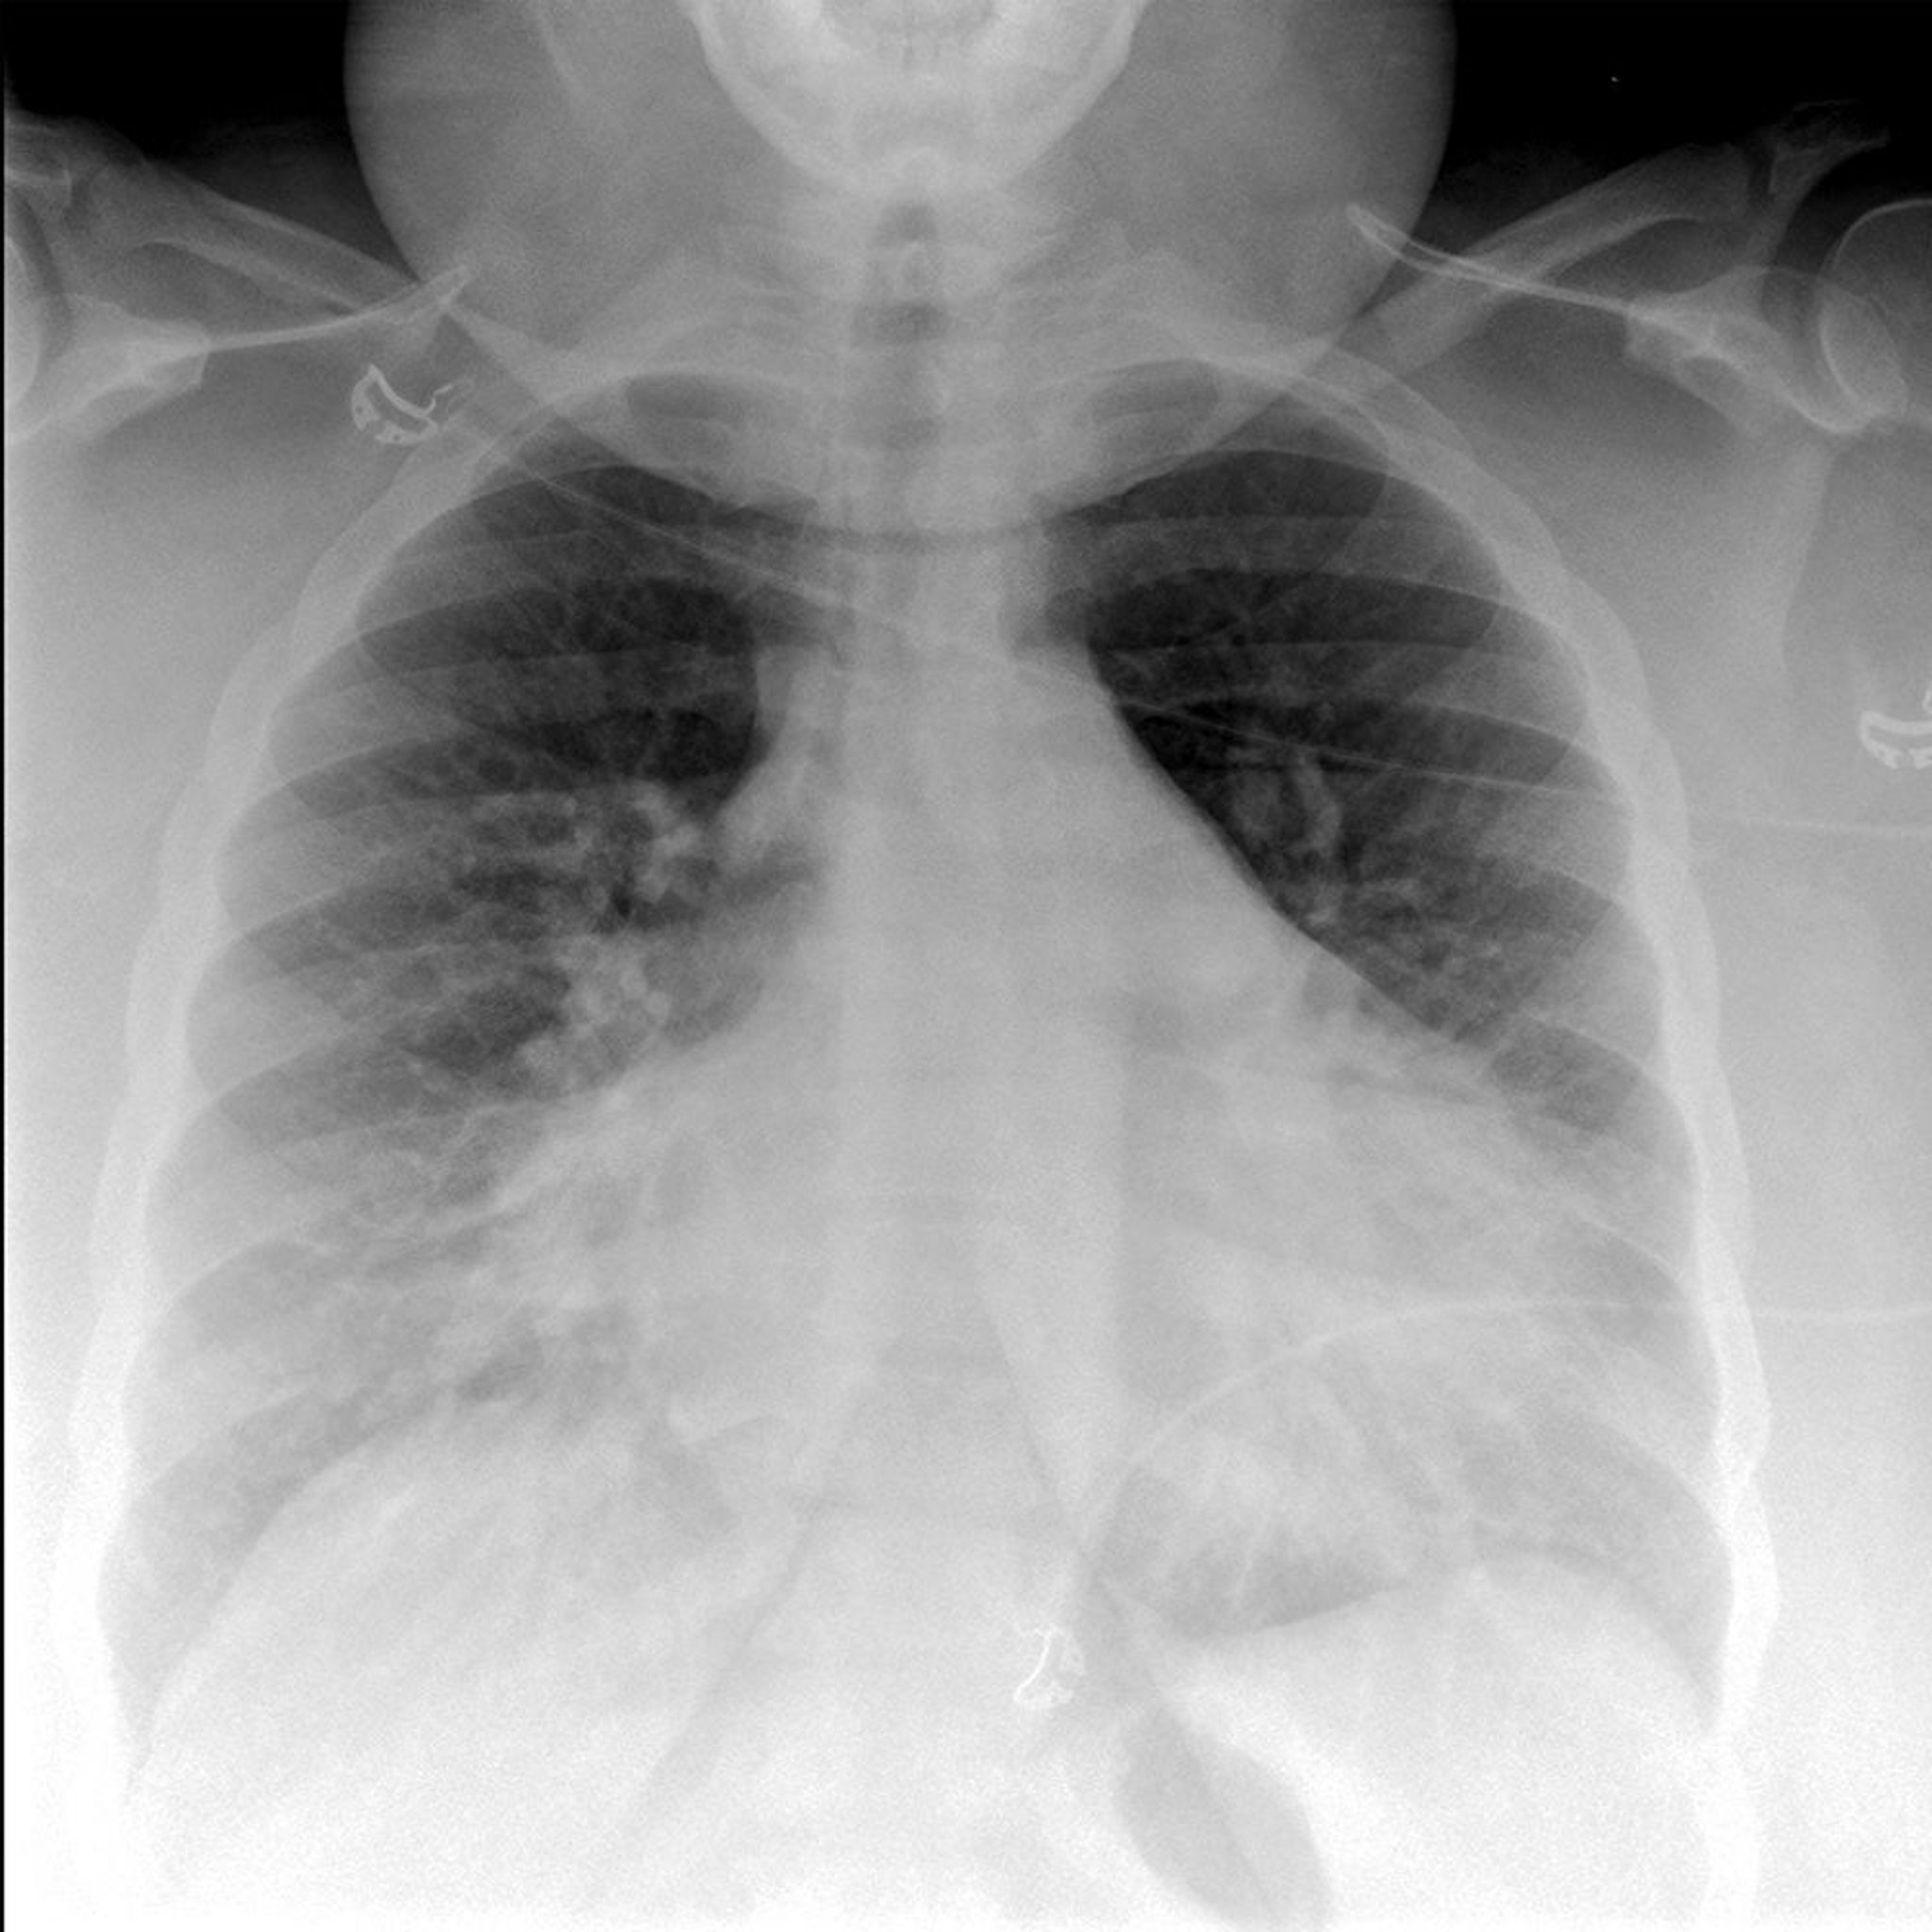 Röntgenaufnahme des Thorax bei einem Patienten mit Lungenödem